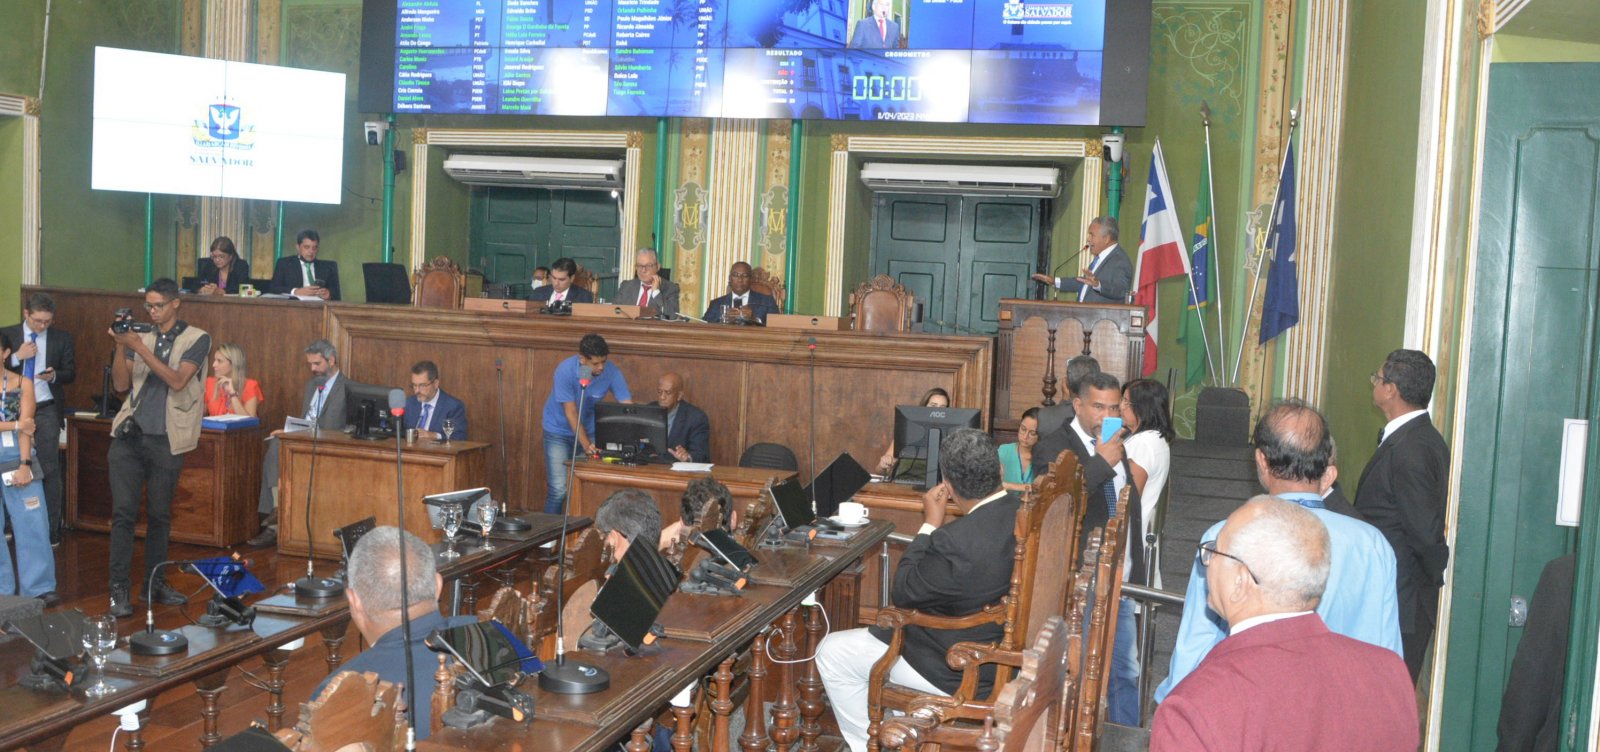 Câmara de Salvador suspense sessão após desacordo de vereadores